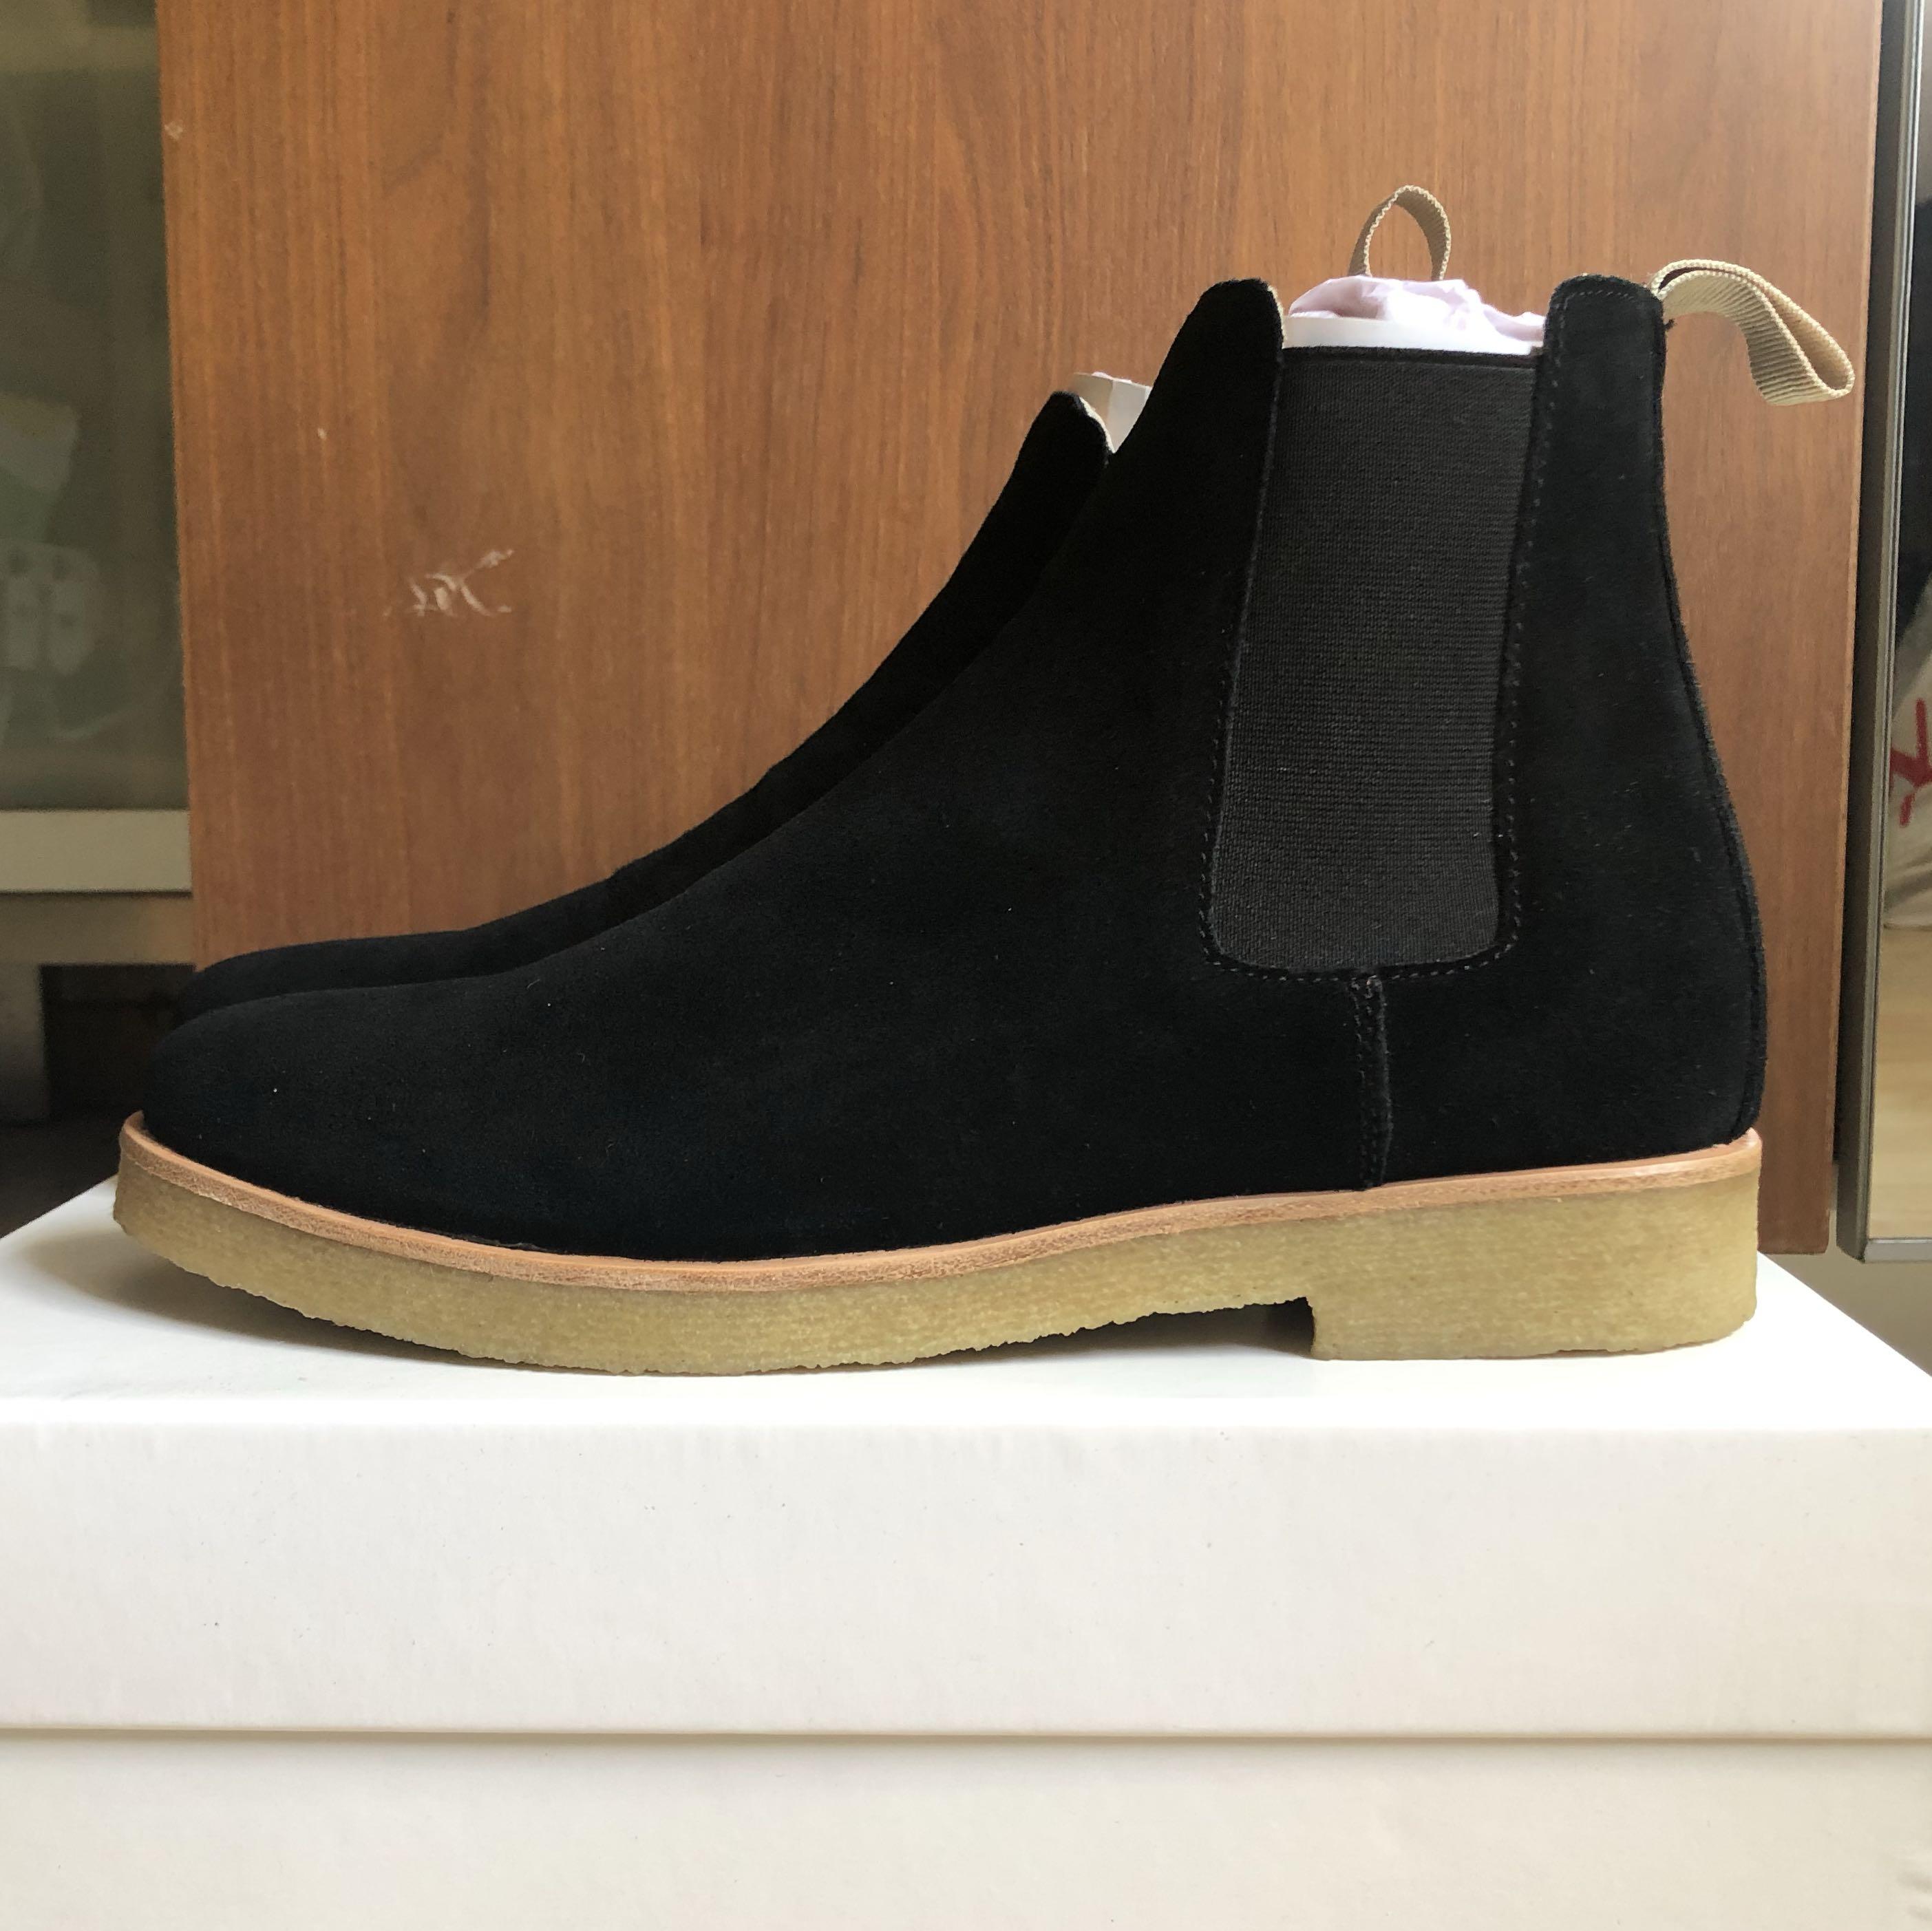 Chelsea Boots, Men's Fashion, Footwear 